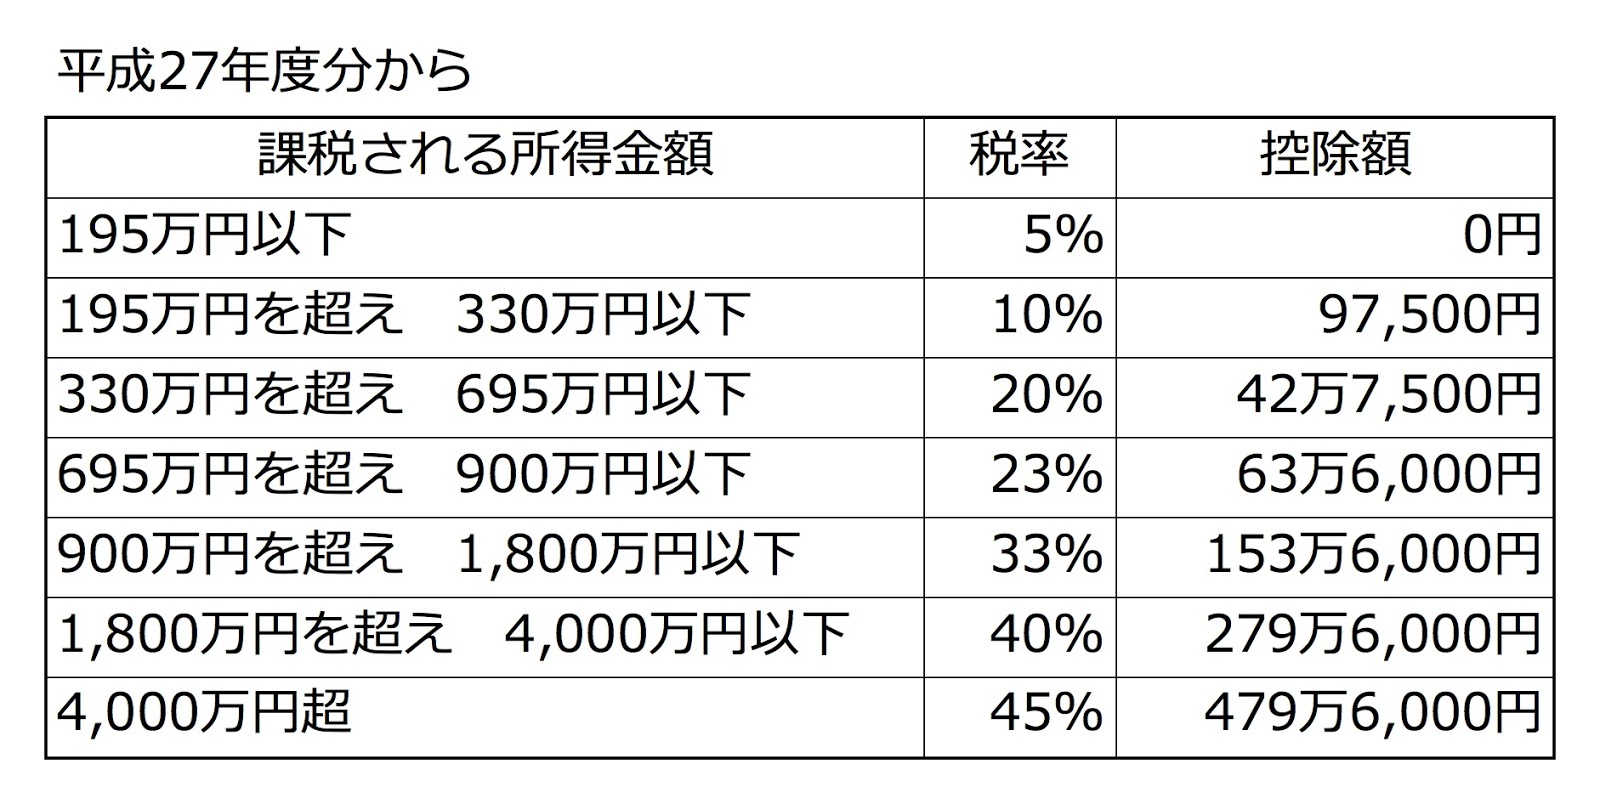 日本稅金 解析01 所得稅 住民稅 知道這些是怎麼計算的嗎 有沒有被唬爛 路易楊的日本在留塗鴉牆